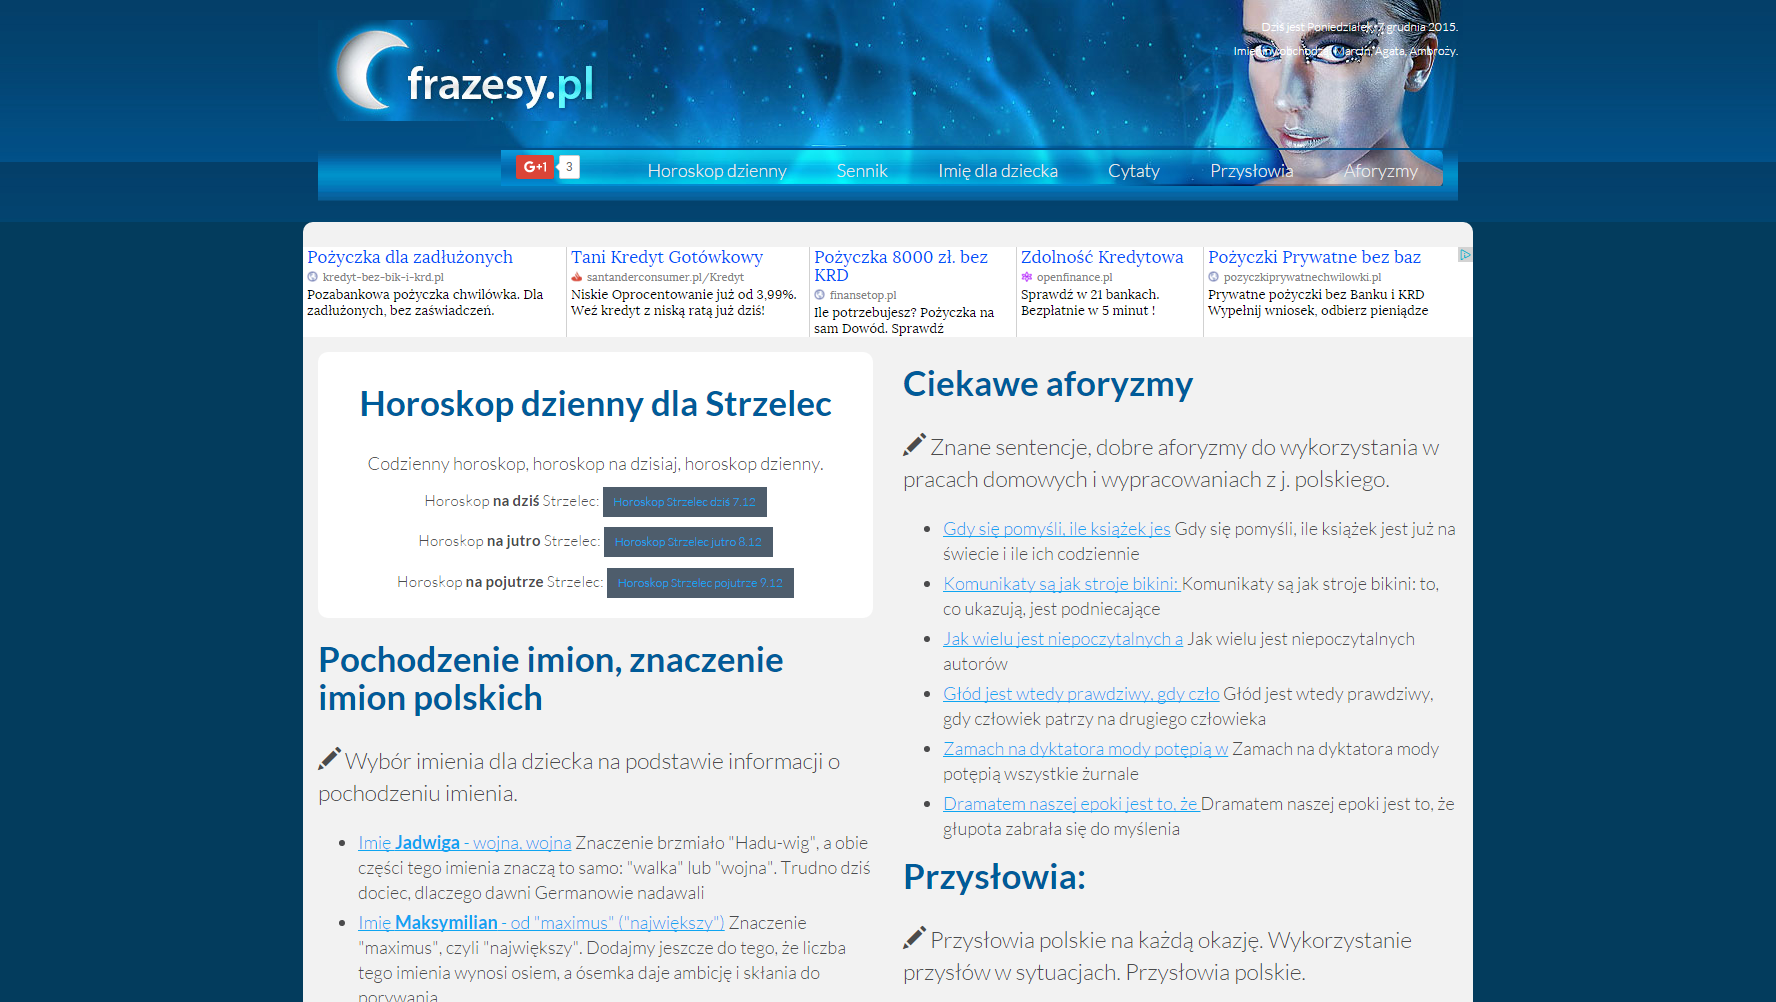 Project Frazesy.pl